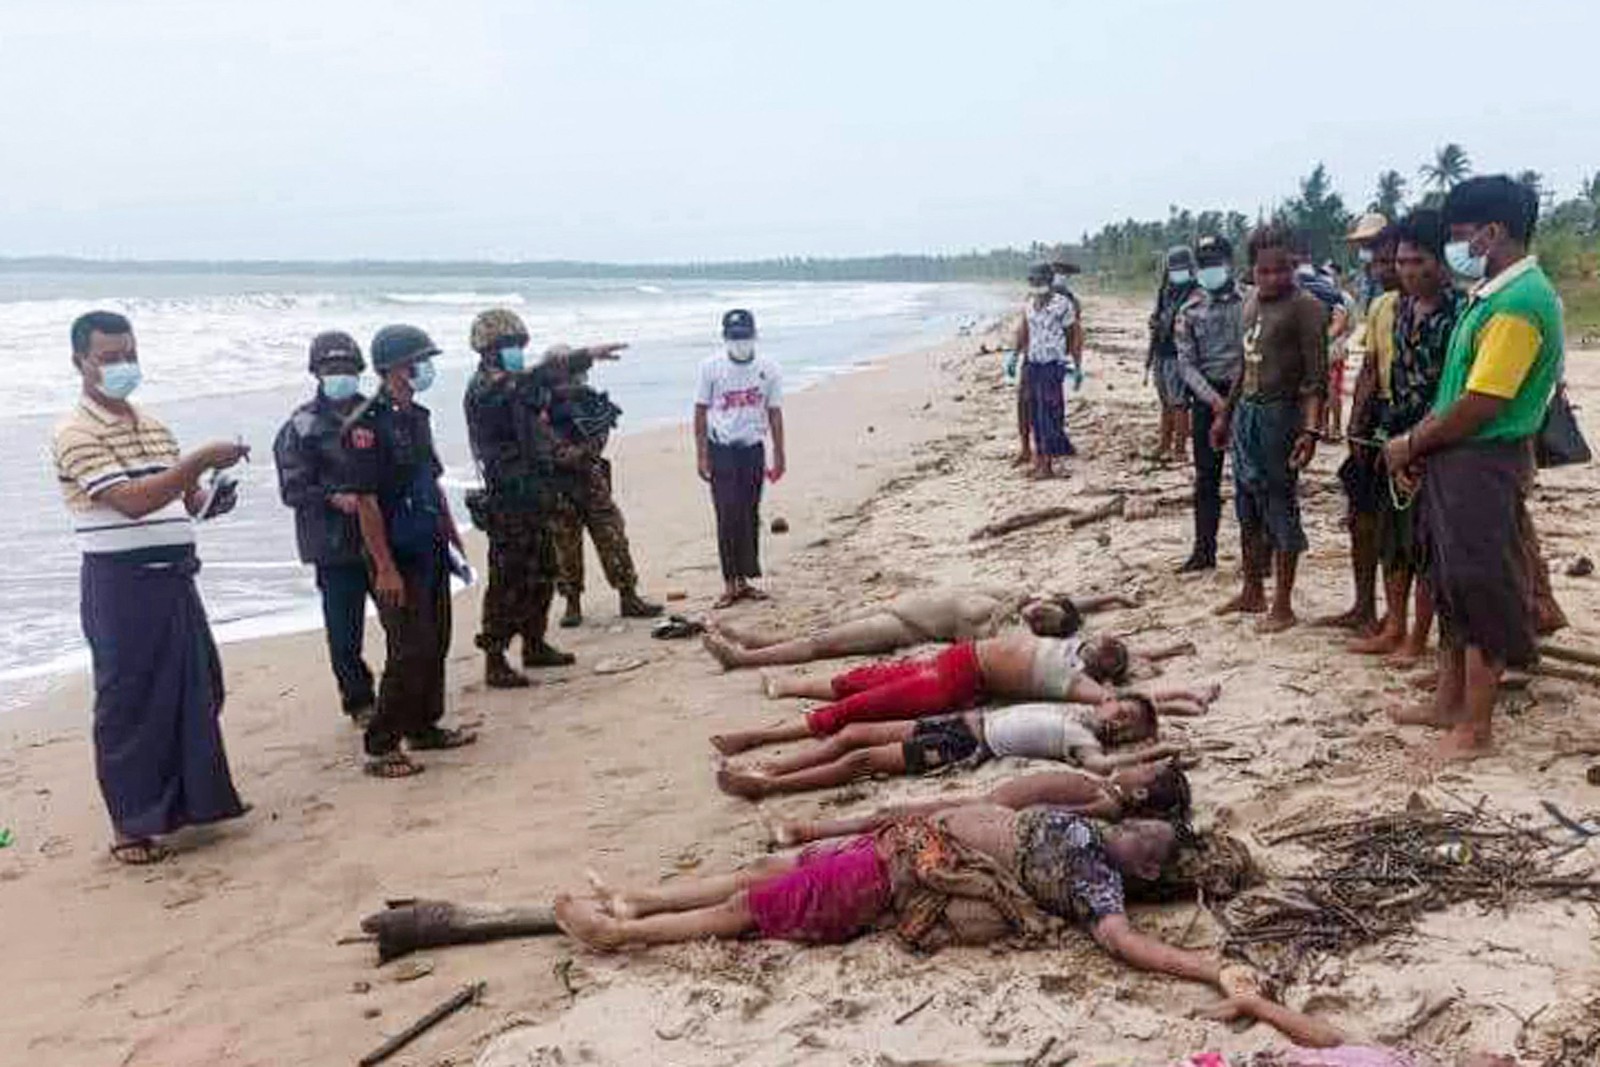 Corpos de 14 pessoas apareceram em uma praia em Mianmar, disse a polícia à AFP. Segundo a ONU, entre as vítimas há crianças rohingya, minoria islâmica que sofre perseguição no país — Foto: AFP